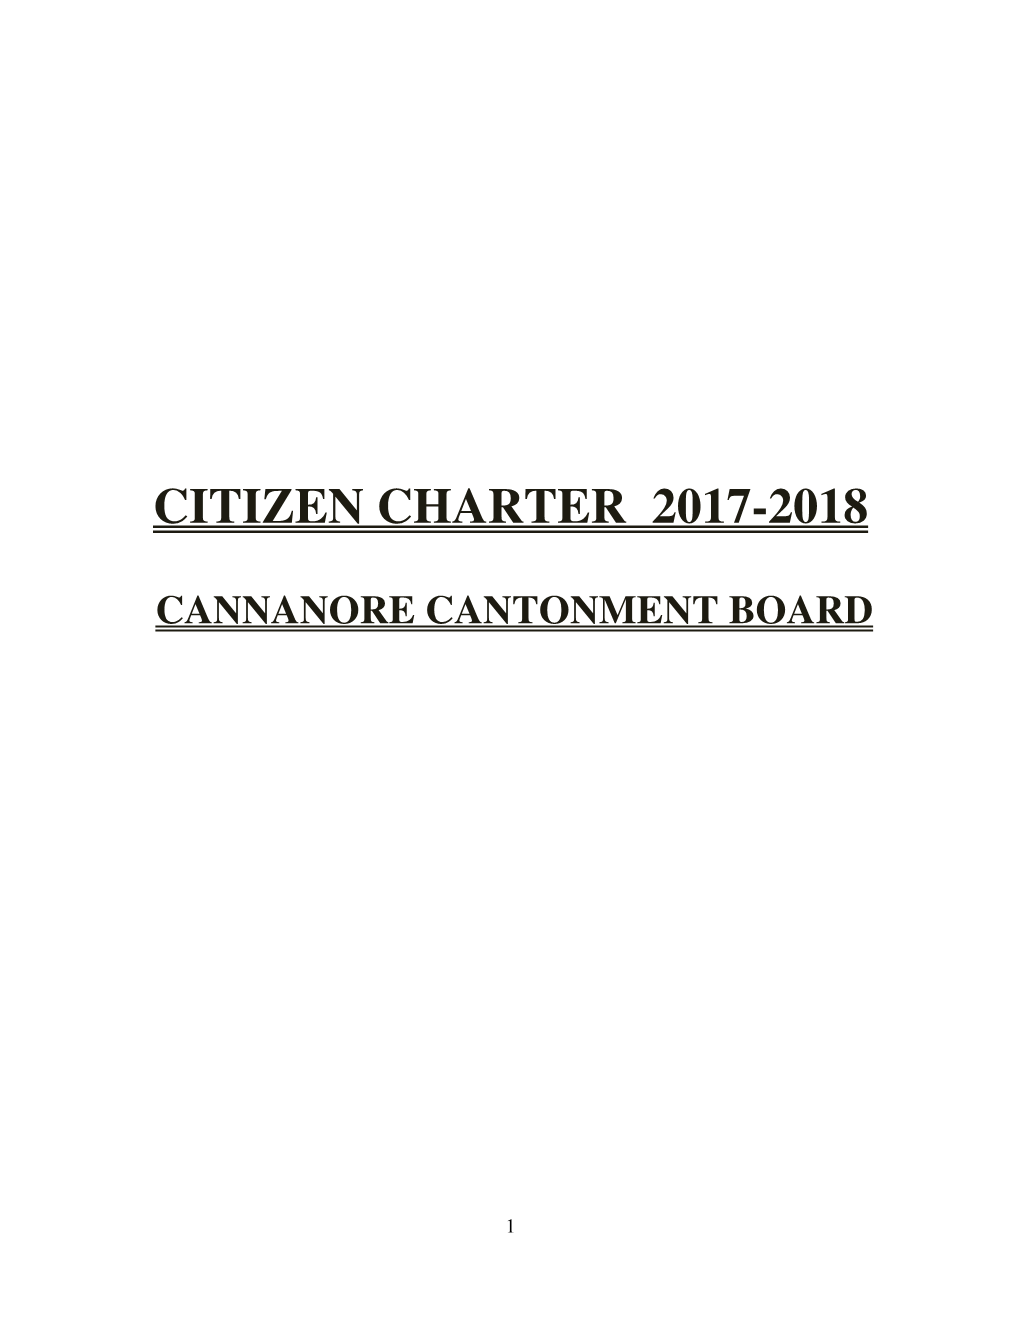 Citizen Charter 2017-2018